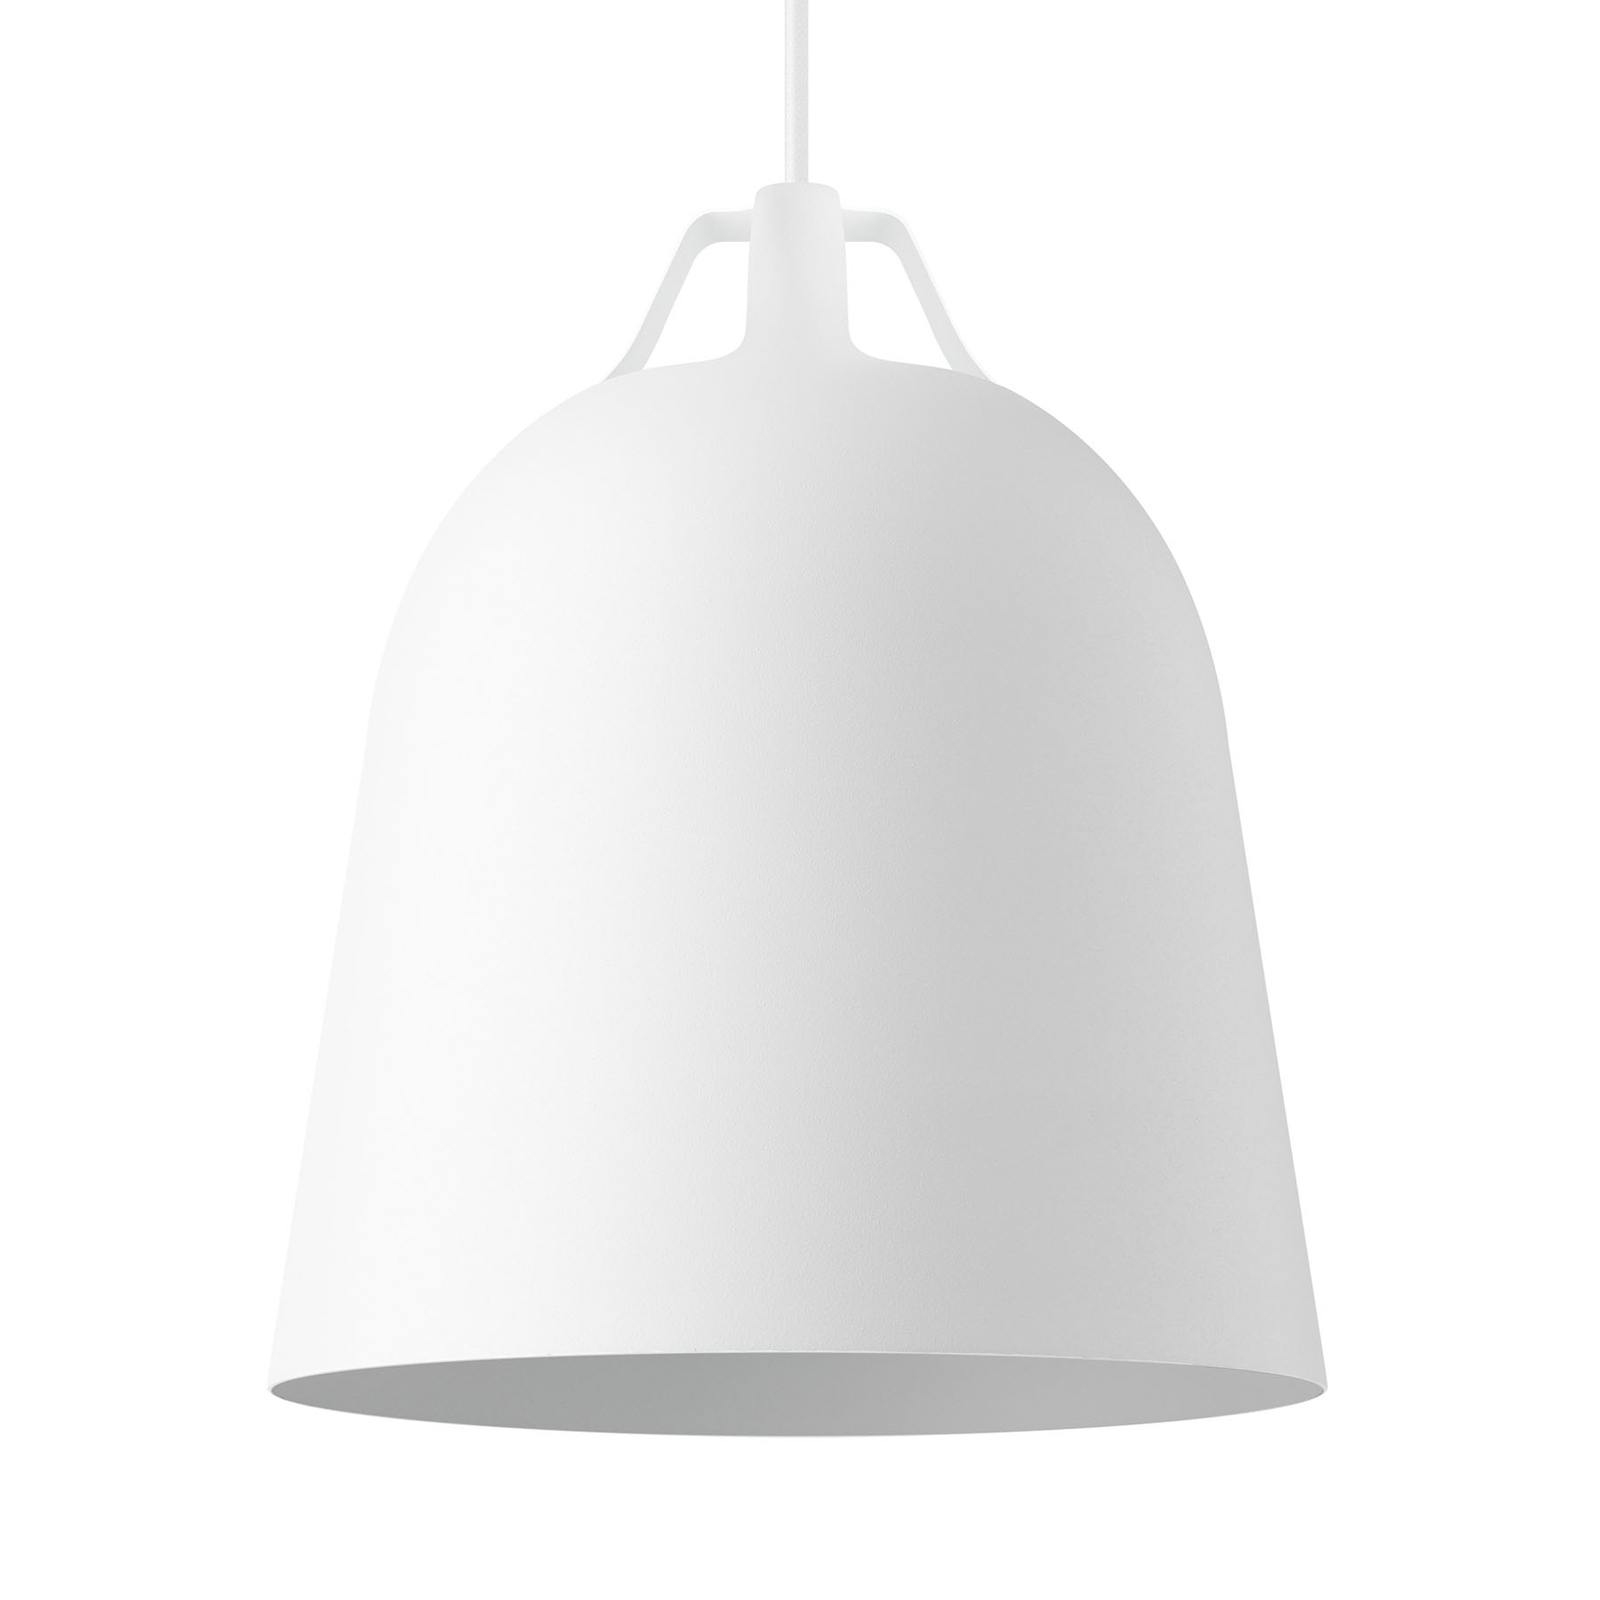 EVA Solo Clover závesná lampa Ø 21 cm, biela